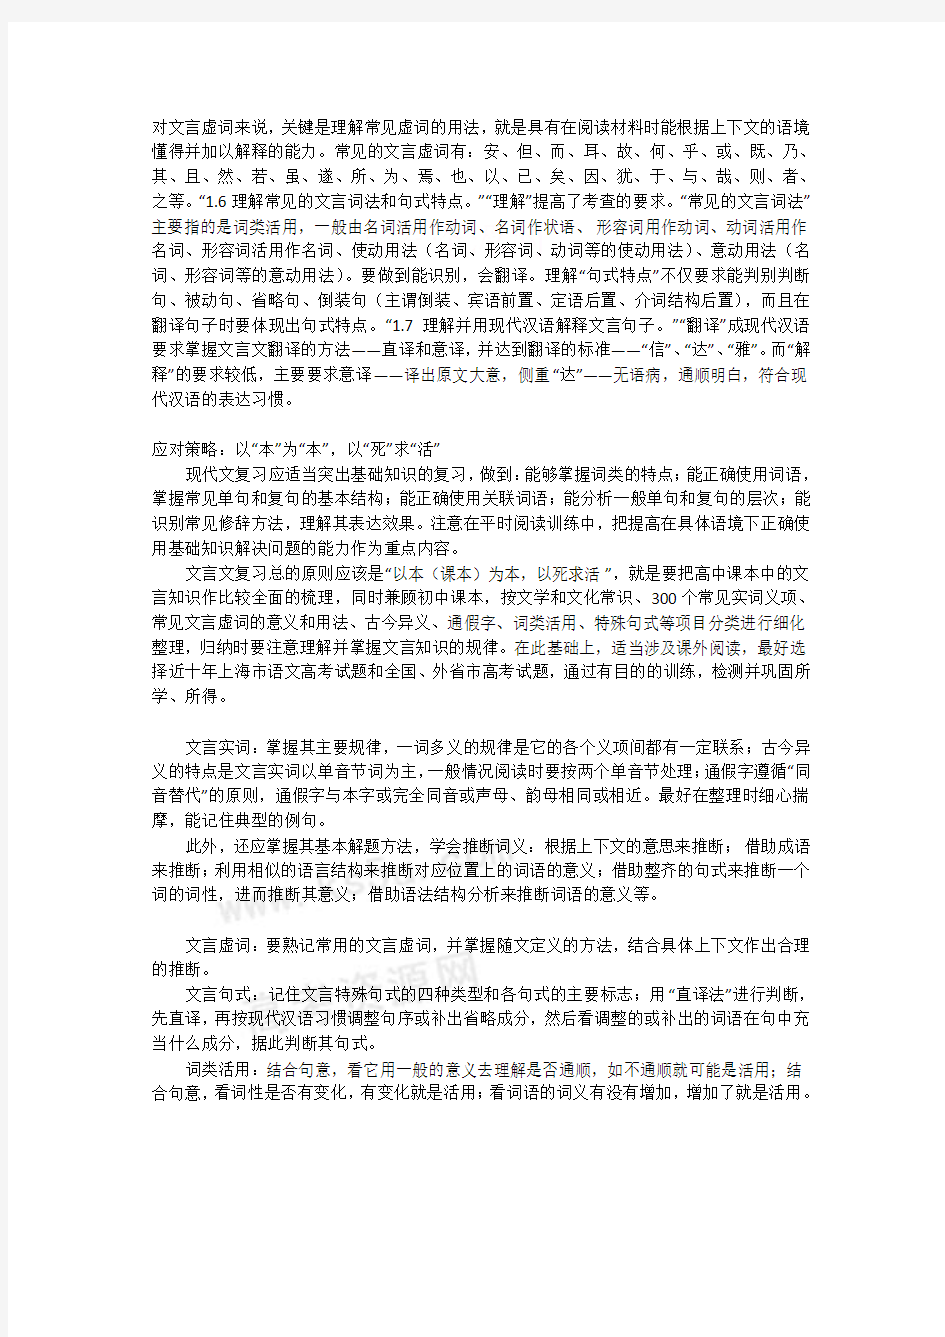 上海高考语文考纲变化解读及应变策略